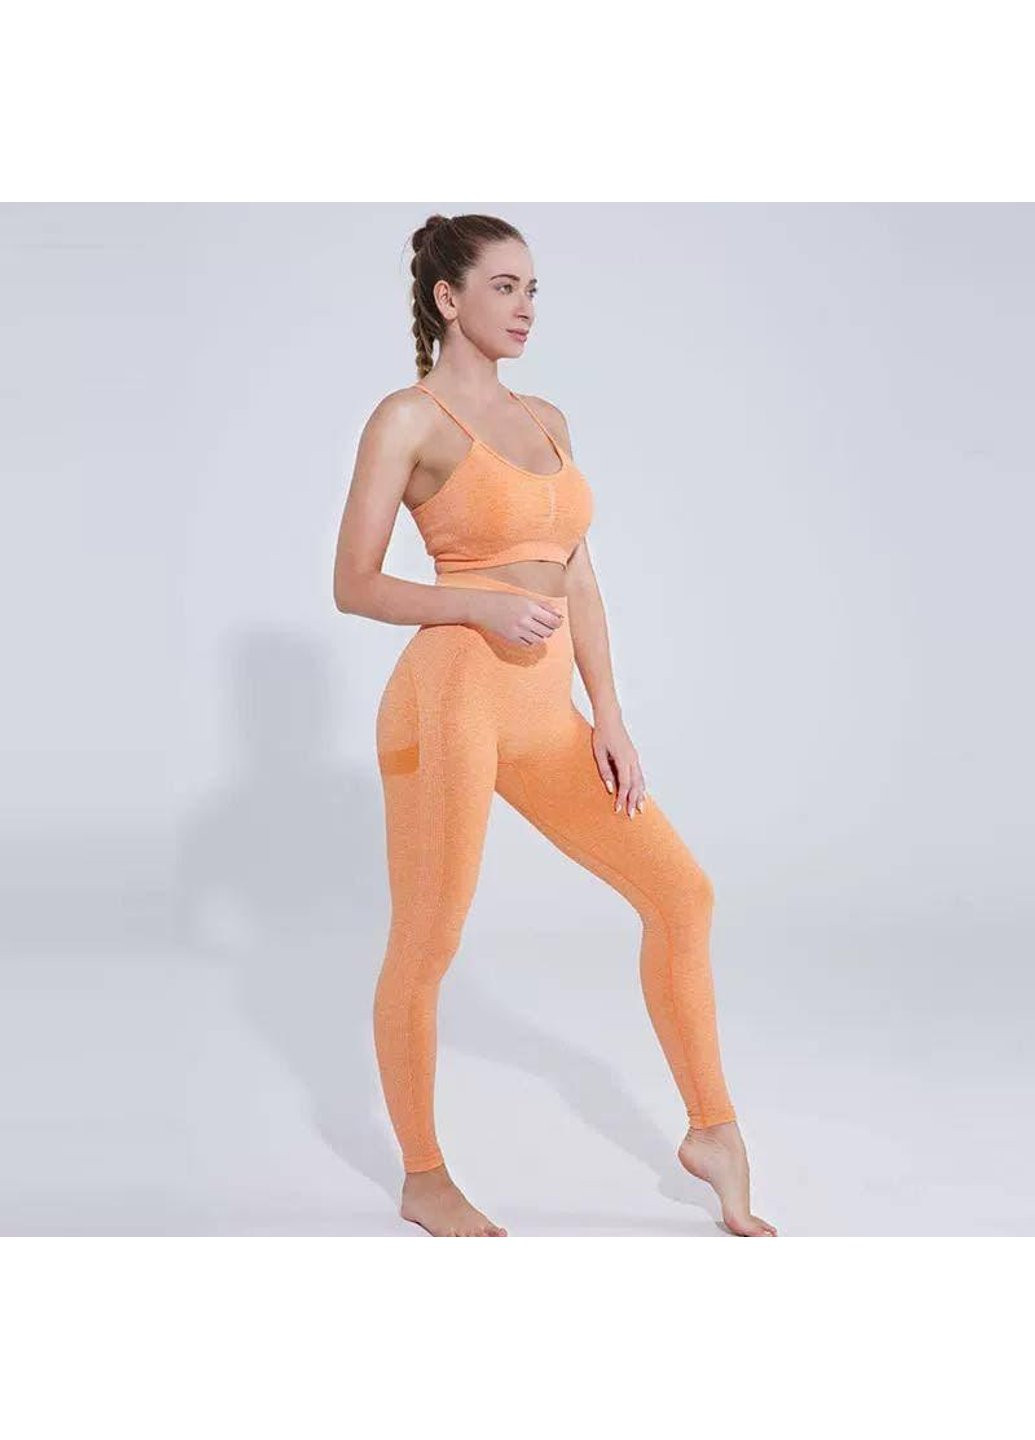 Оранжевые демисезонные леггинсы женские спортивные 6203 l оранжевые Fashion